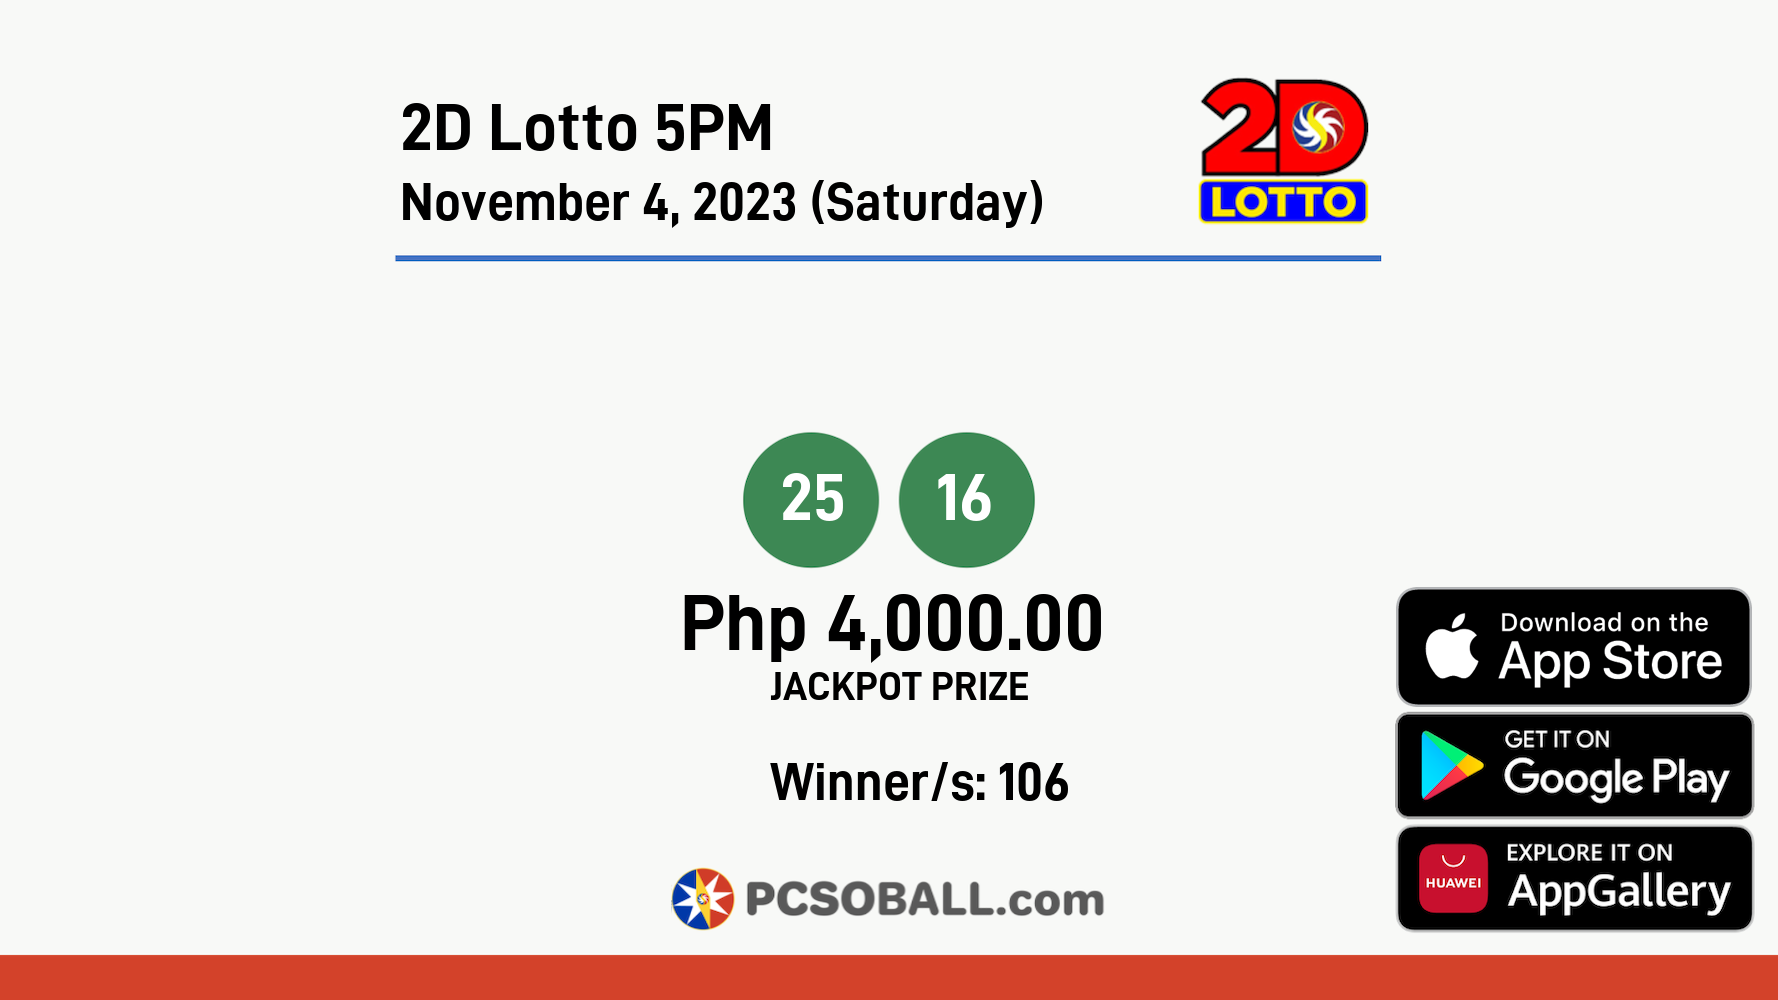 2D Lotto 5PM November 4, 2023 (Saturday) Result